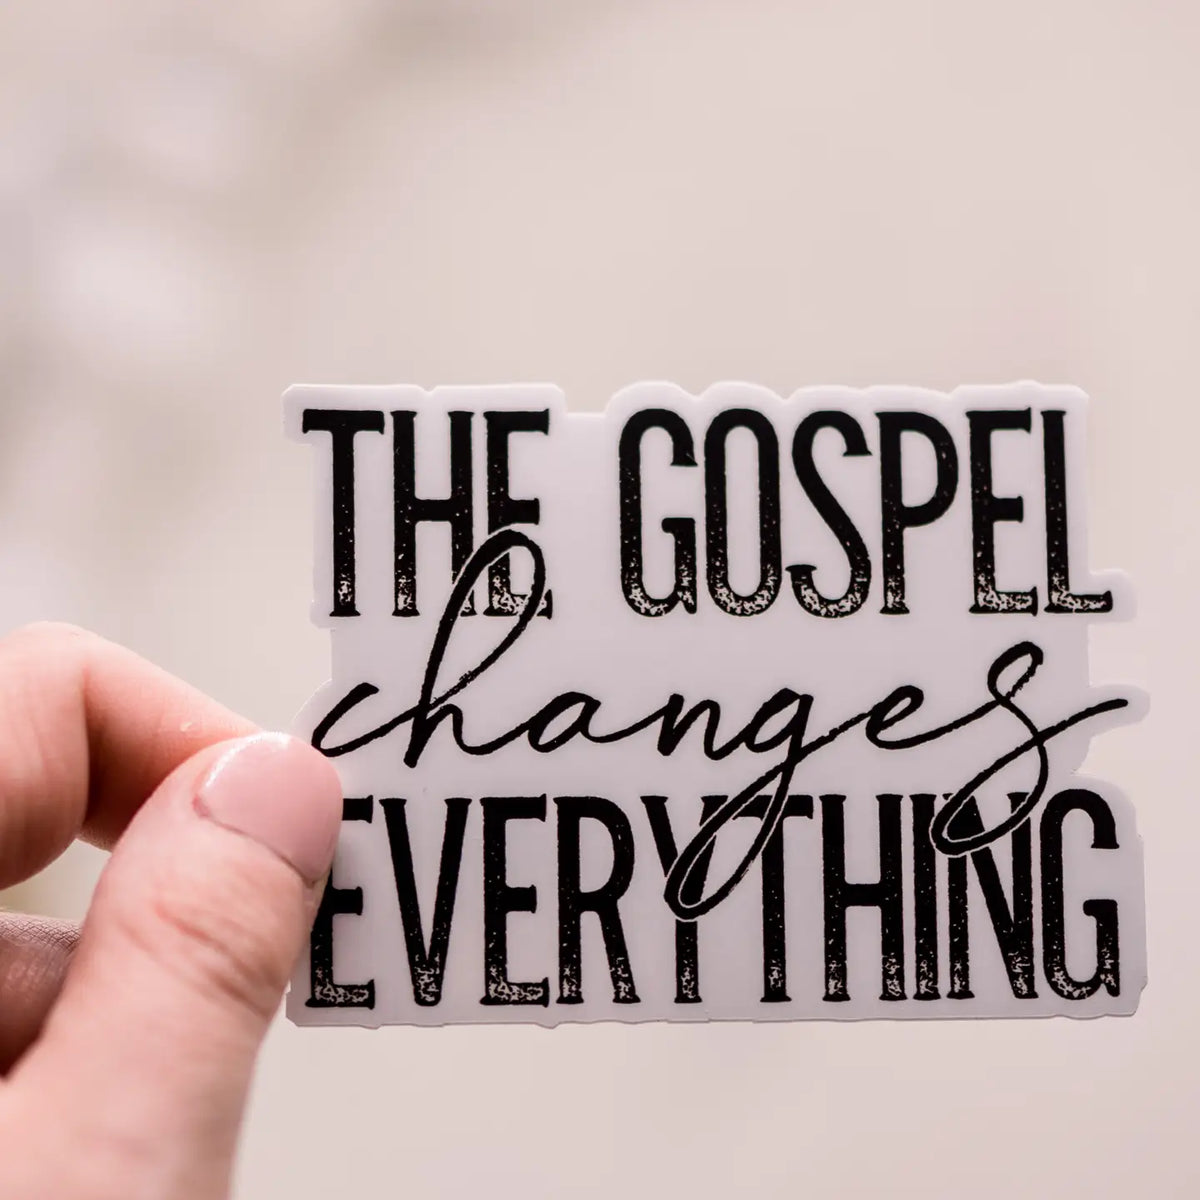 The Gospel Changes Everything, Vinyl Sticker, 3x3 in